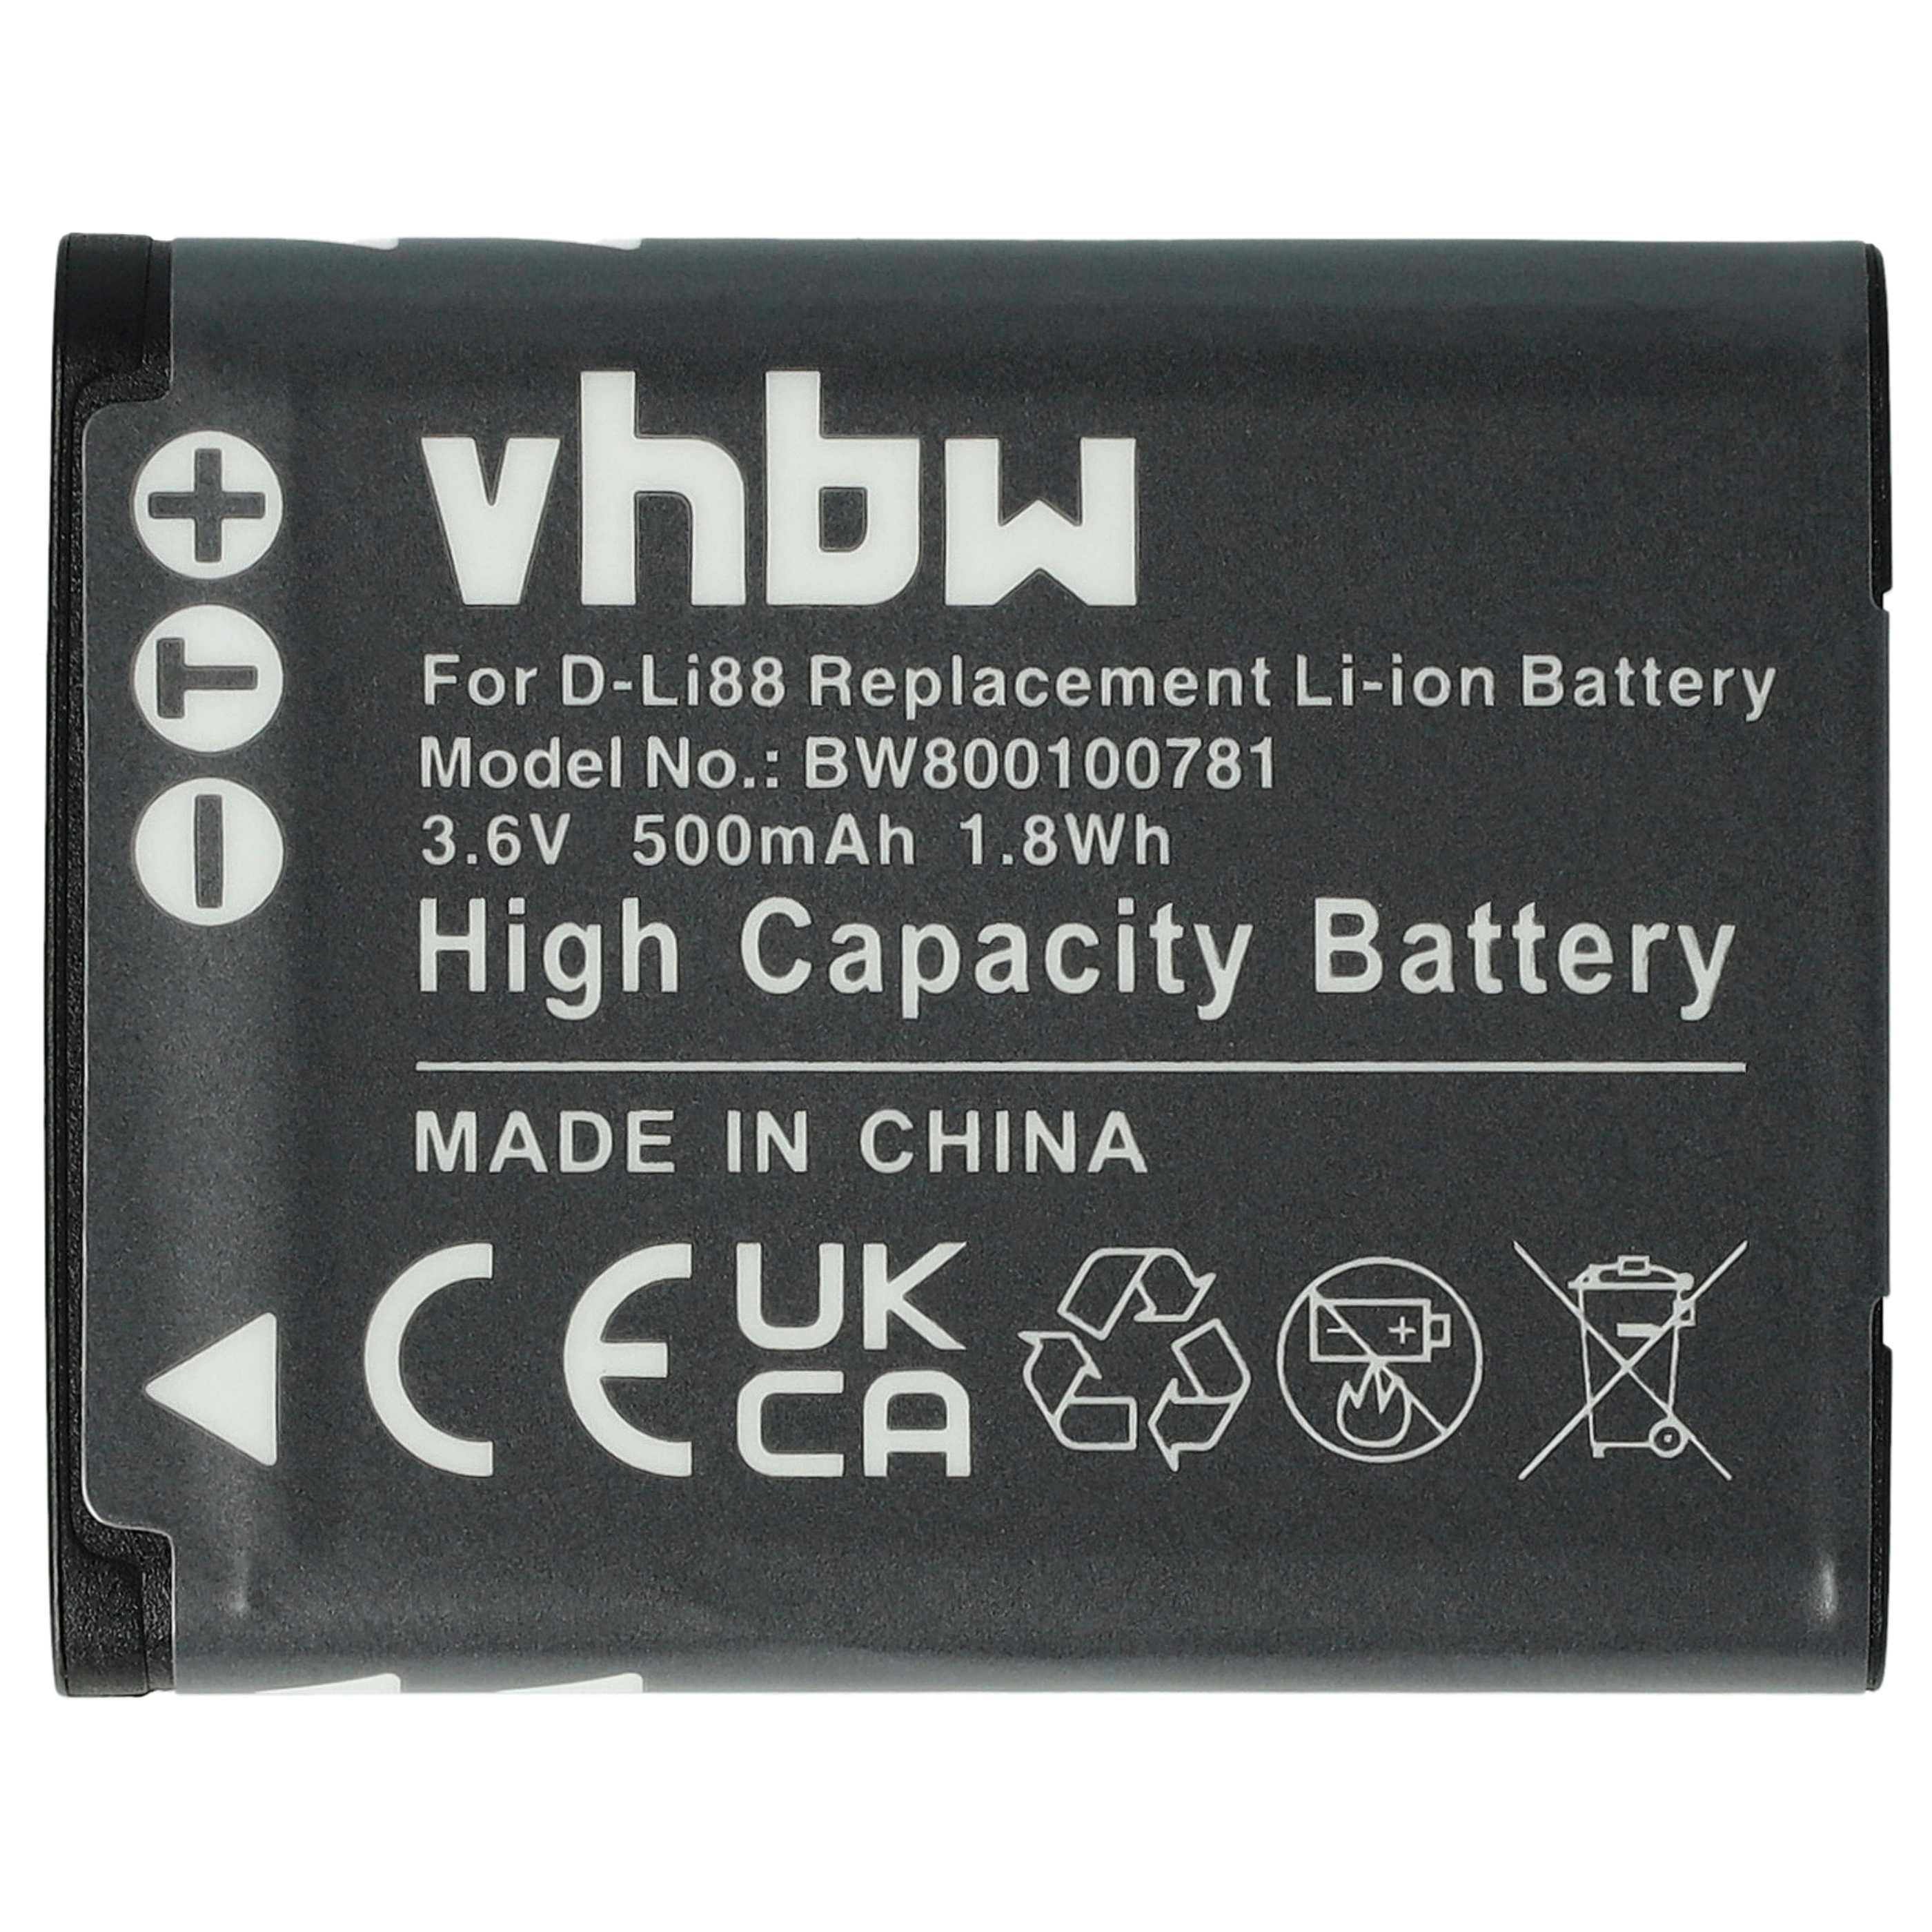 Battery Replacement for Panasonic VW-VBX070E, VW-VBX070 - 500mAh, 3.6V, Li-Ion